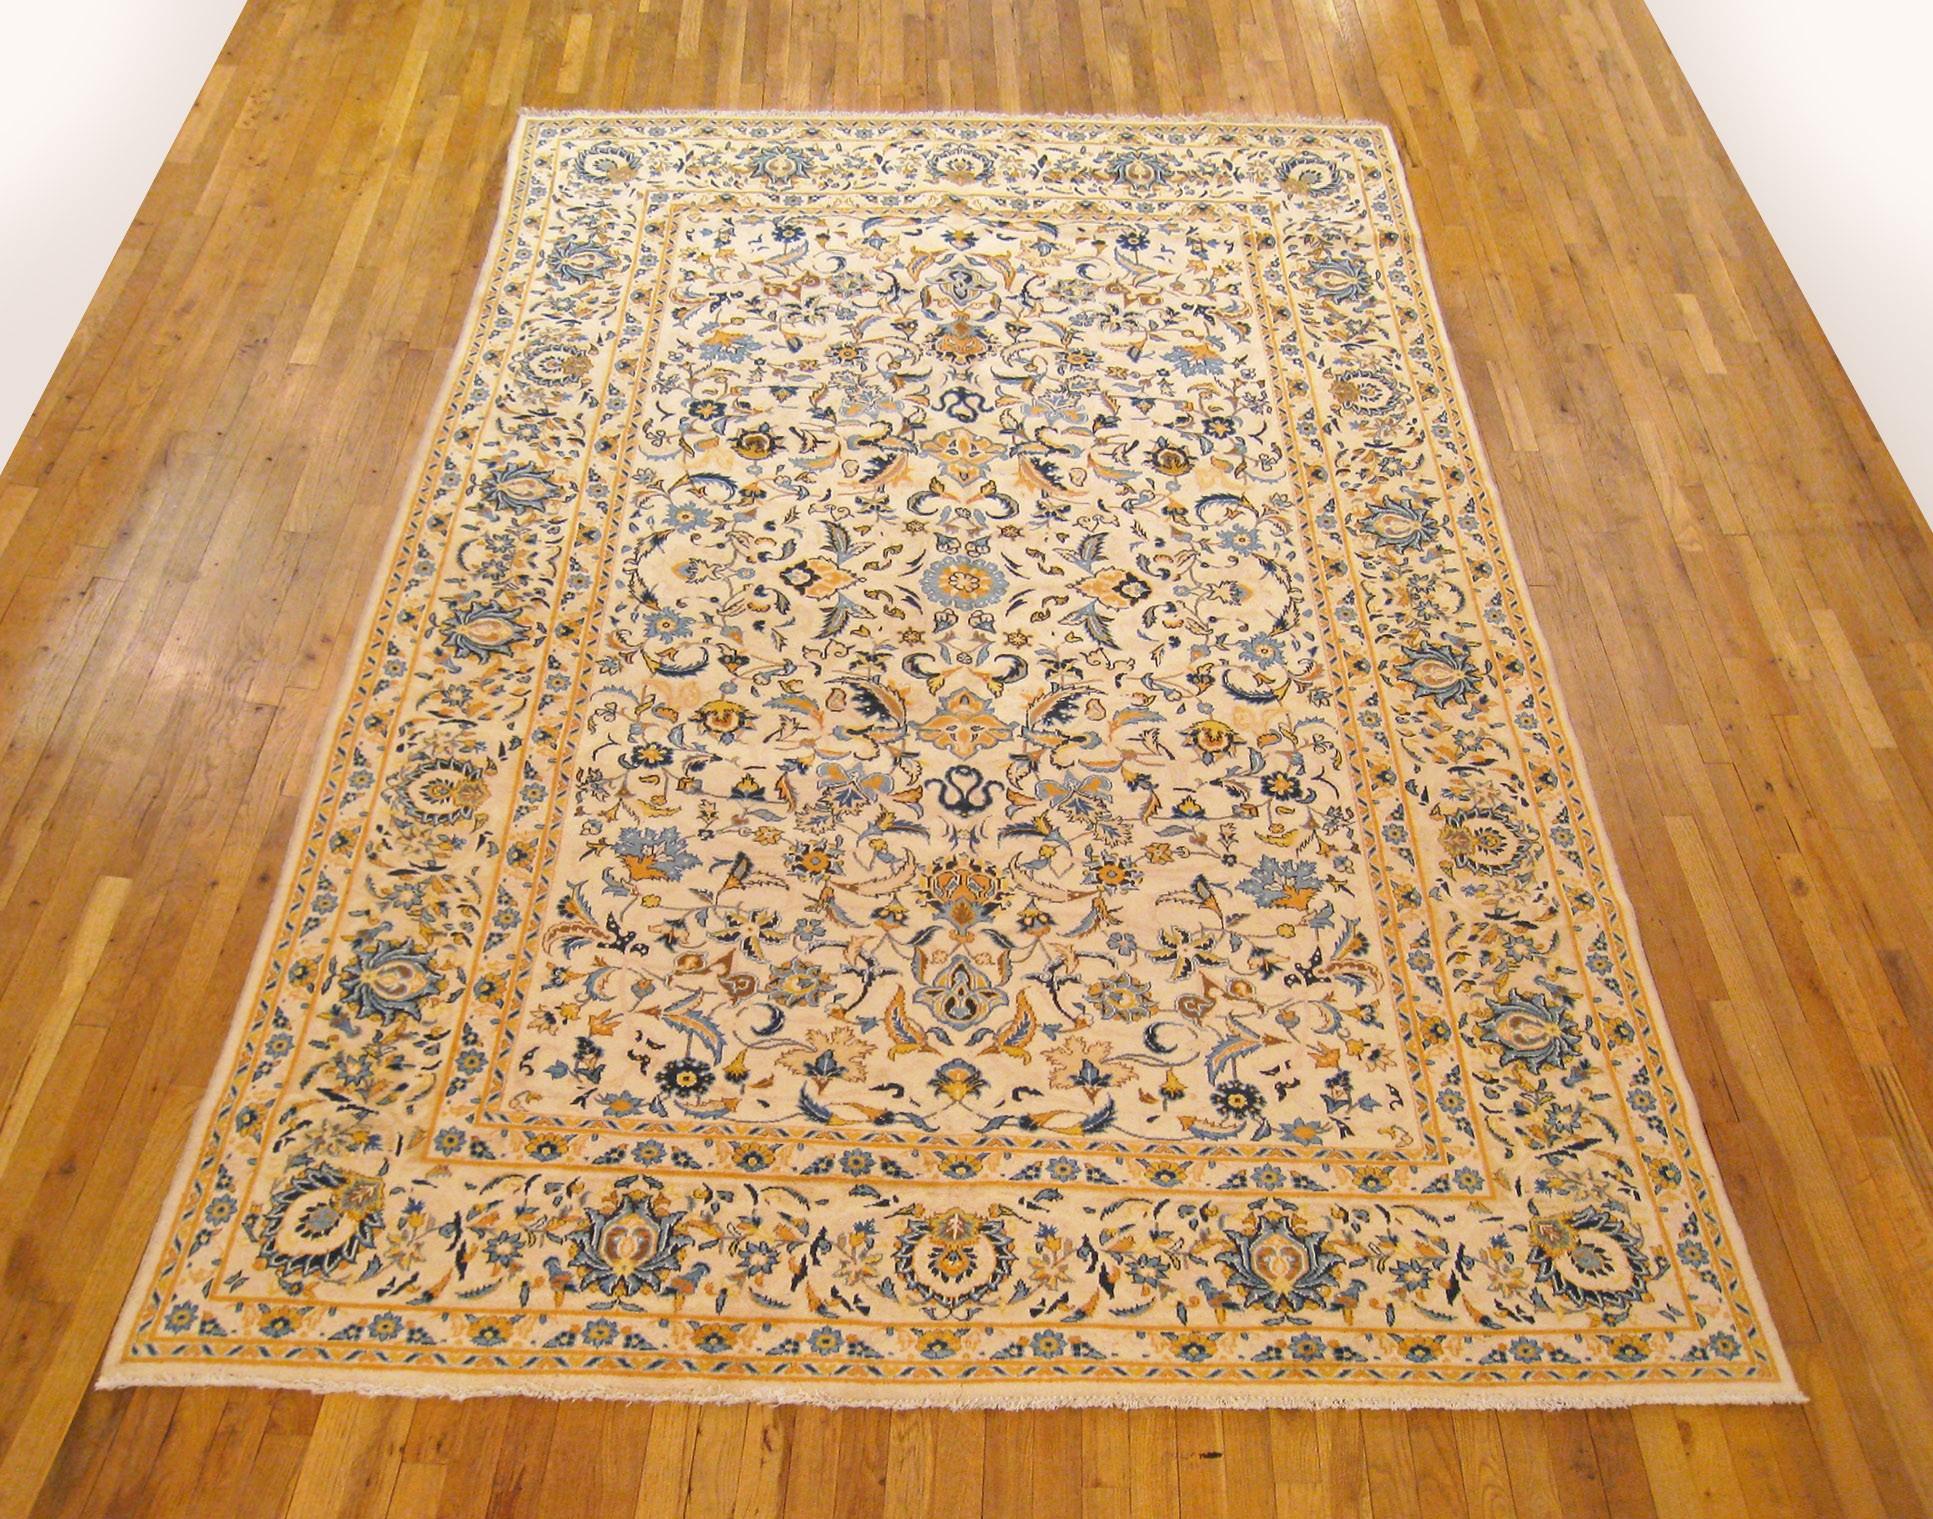 Vintage Persisch Kashan Orientteppich, in Zimmergröße

Ein außergewöhnlicher persischer Kashan-Teppich, ca. 1950, Größe 11,0